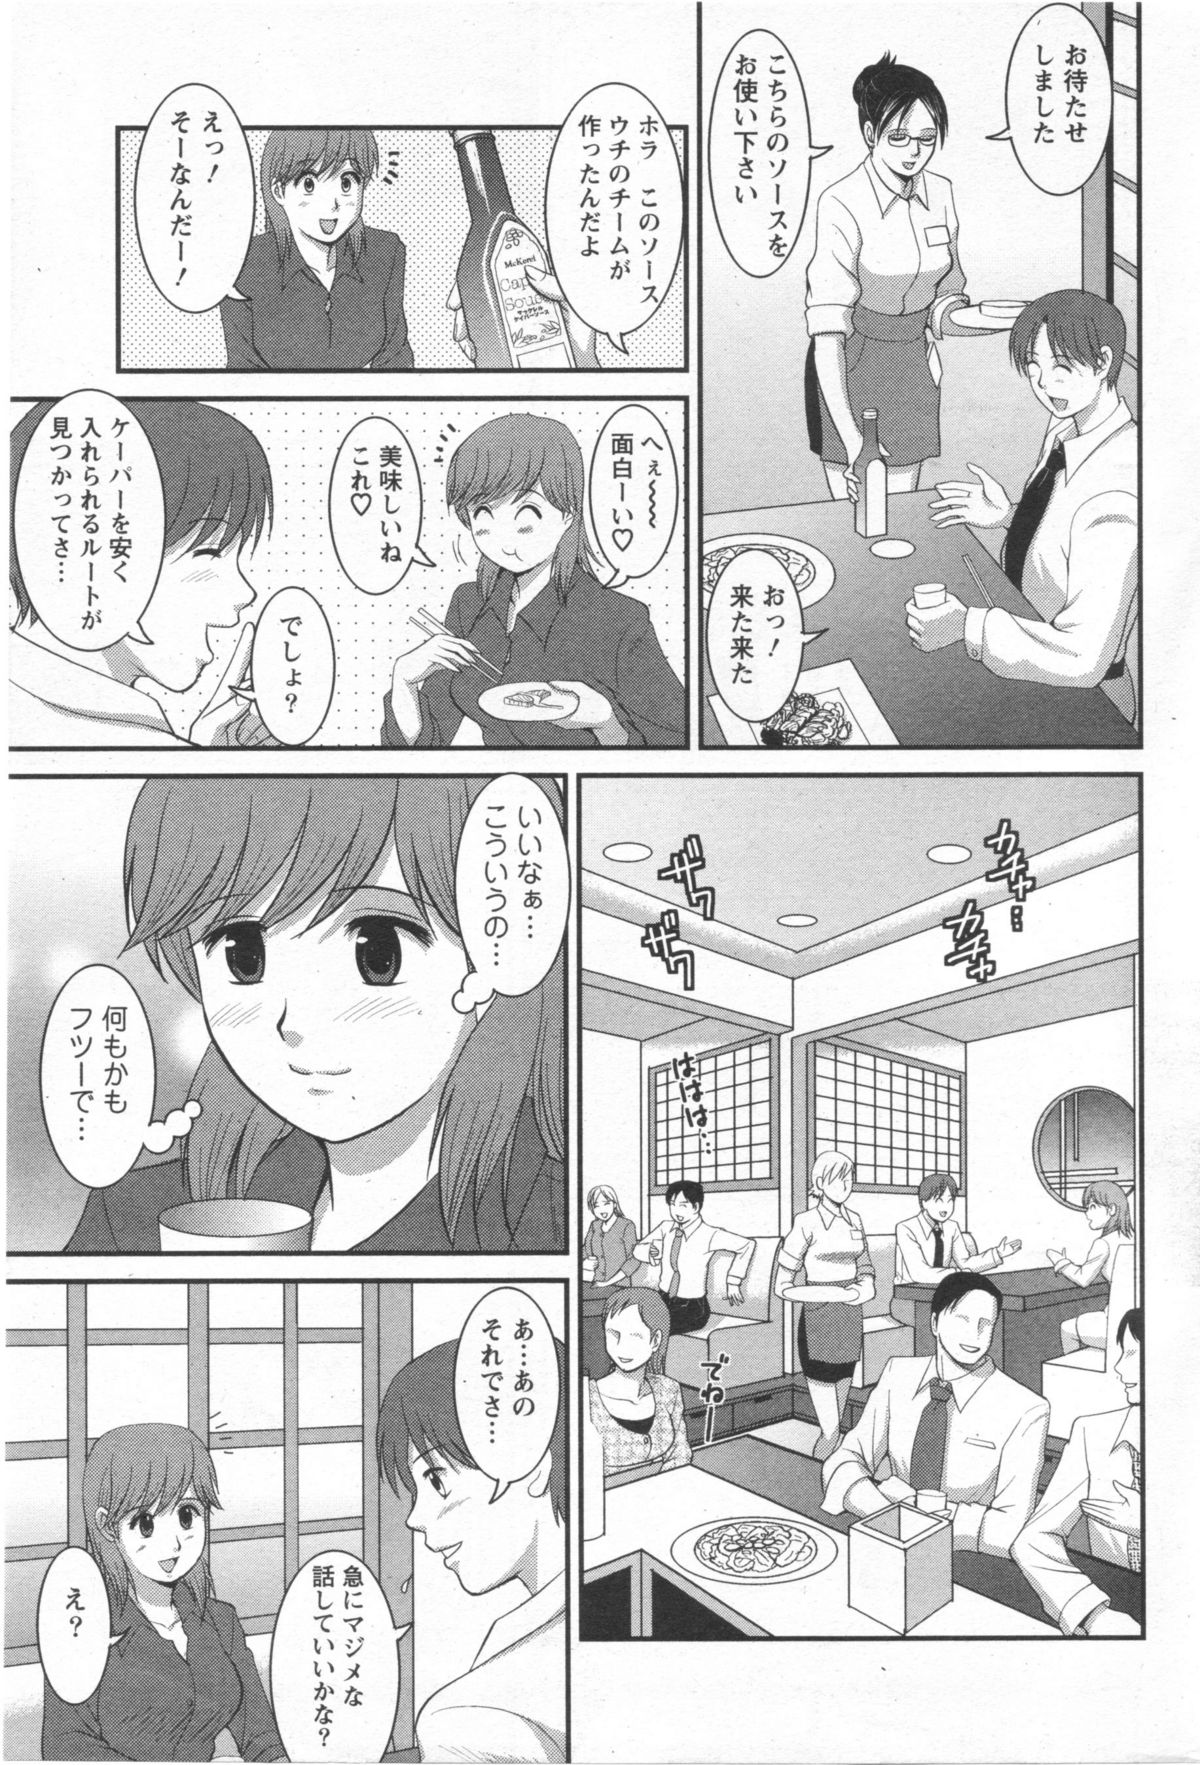 Haken no Muuko-san 10 [Saigado] page 10 full